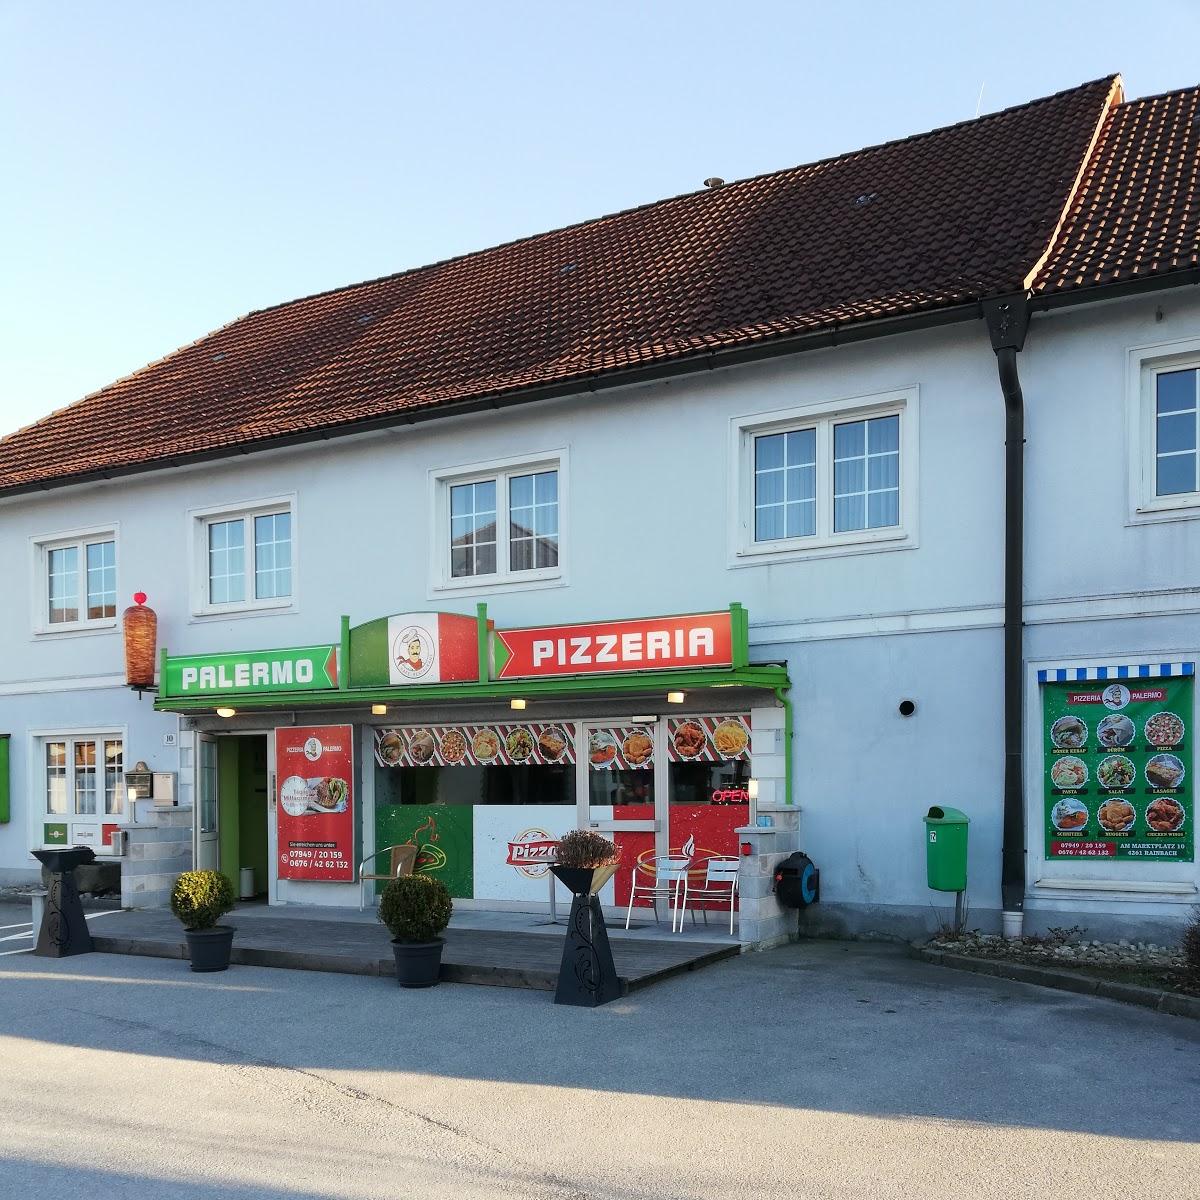 Restaurant "Pizzeria Palermo" in Rainbach im Mühlkreis